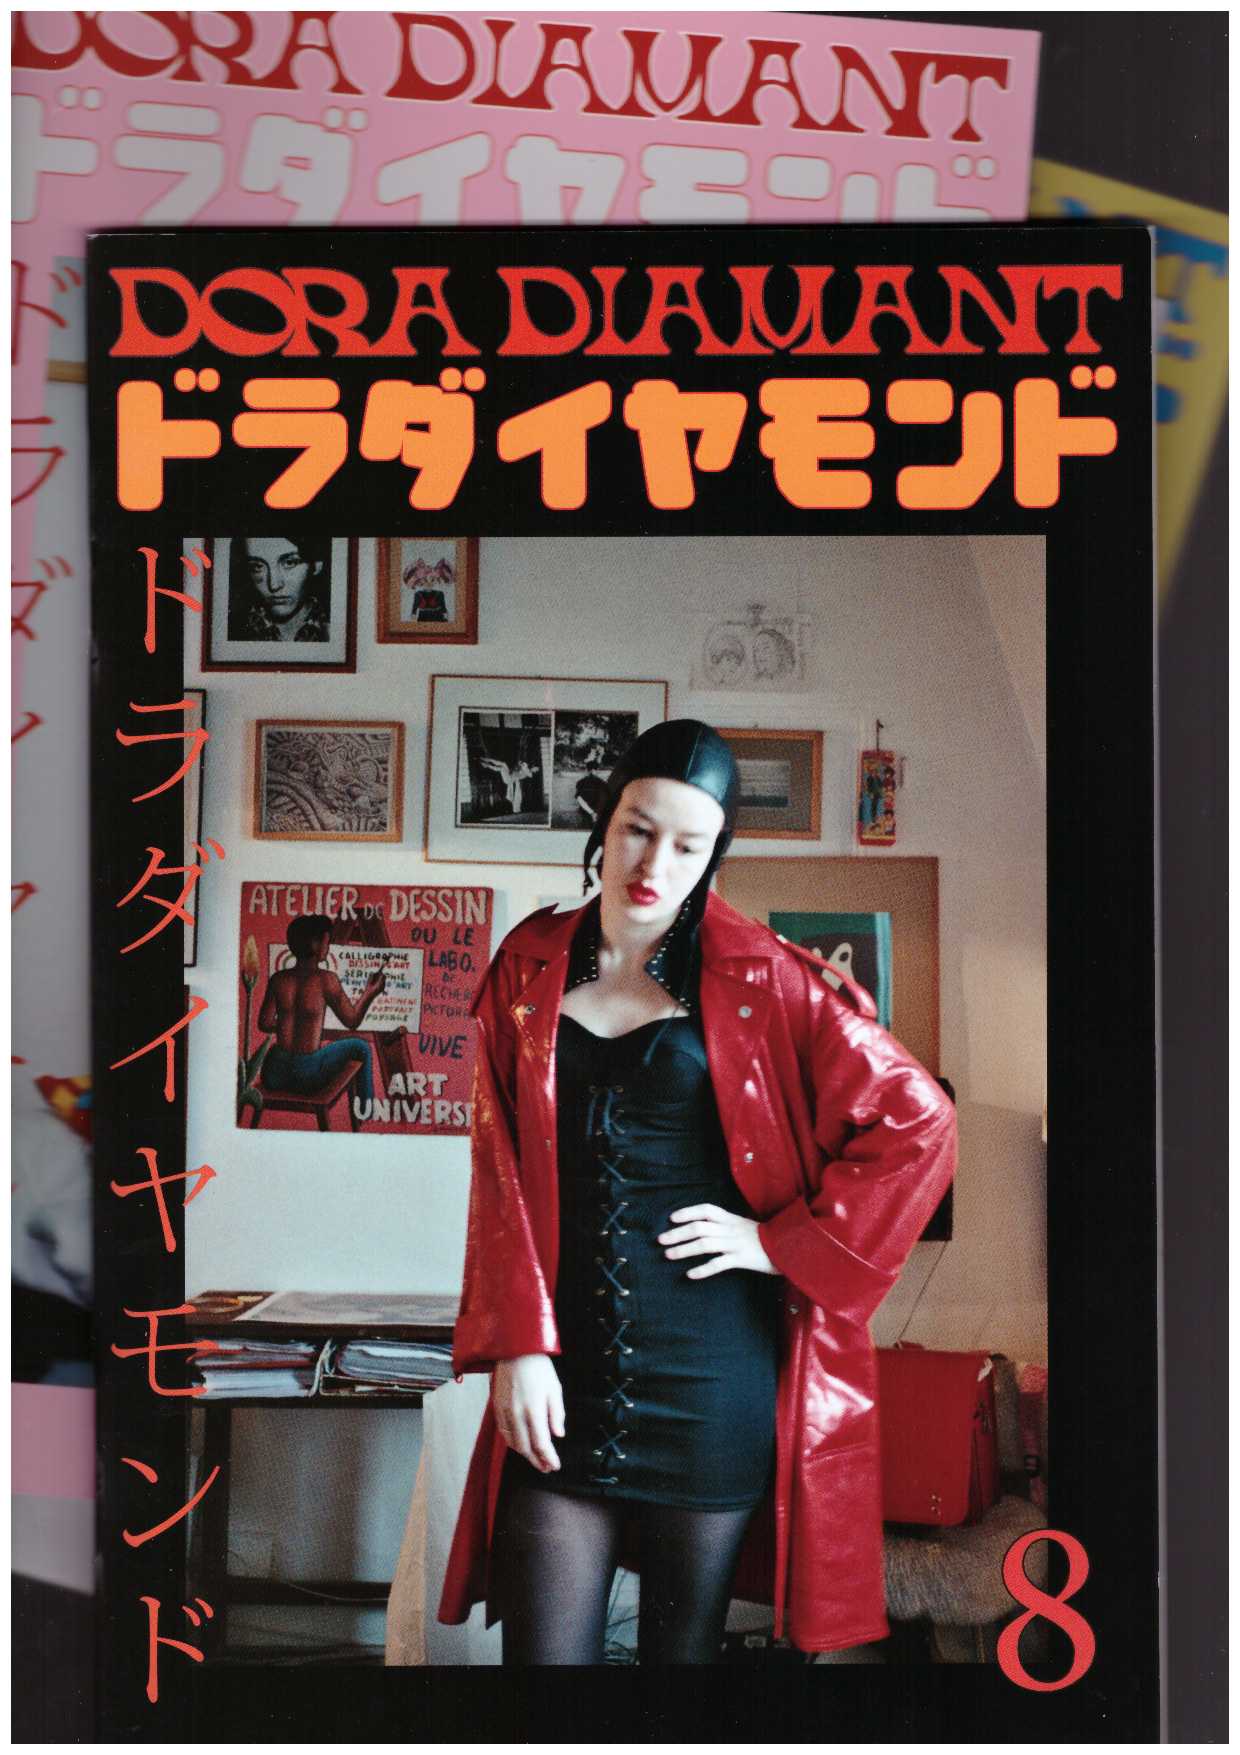 DIAMANT, Dora; MEDIONI, Sivan (ed.) - Archive Dora Diamant #8